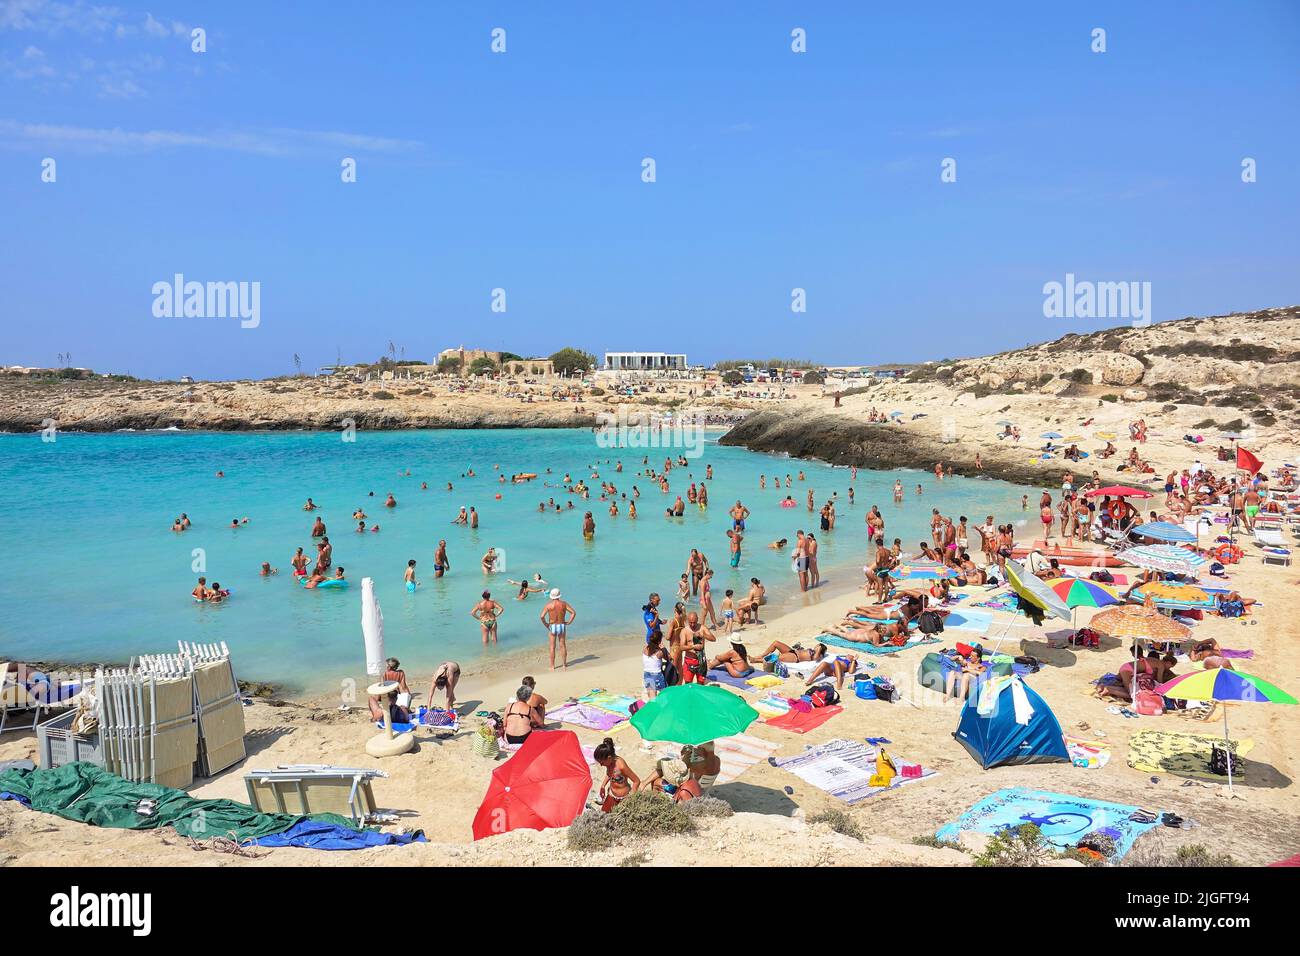 Blick auf die Küste der Insel Lampedusa Meer Paradies für Yachten und Schwimmer. Lampedusa, Italien - August 2019 Stockfoto